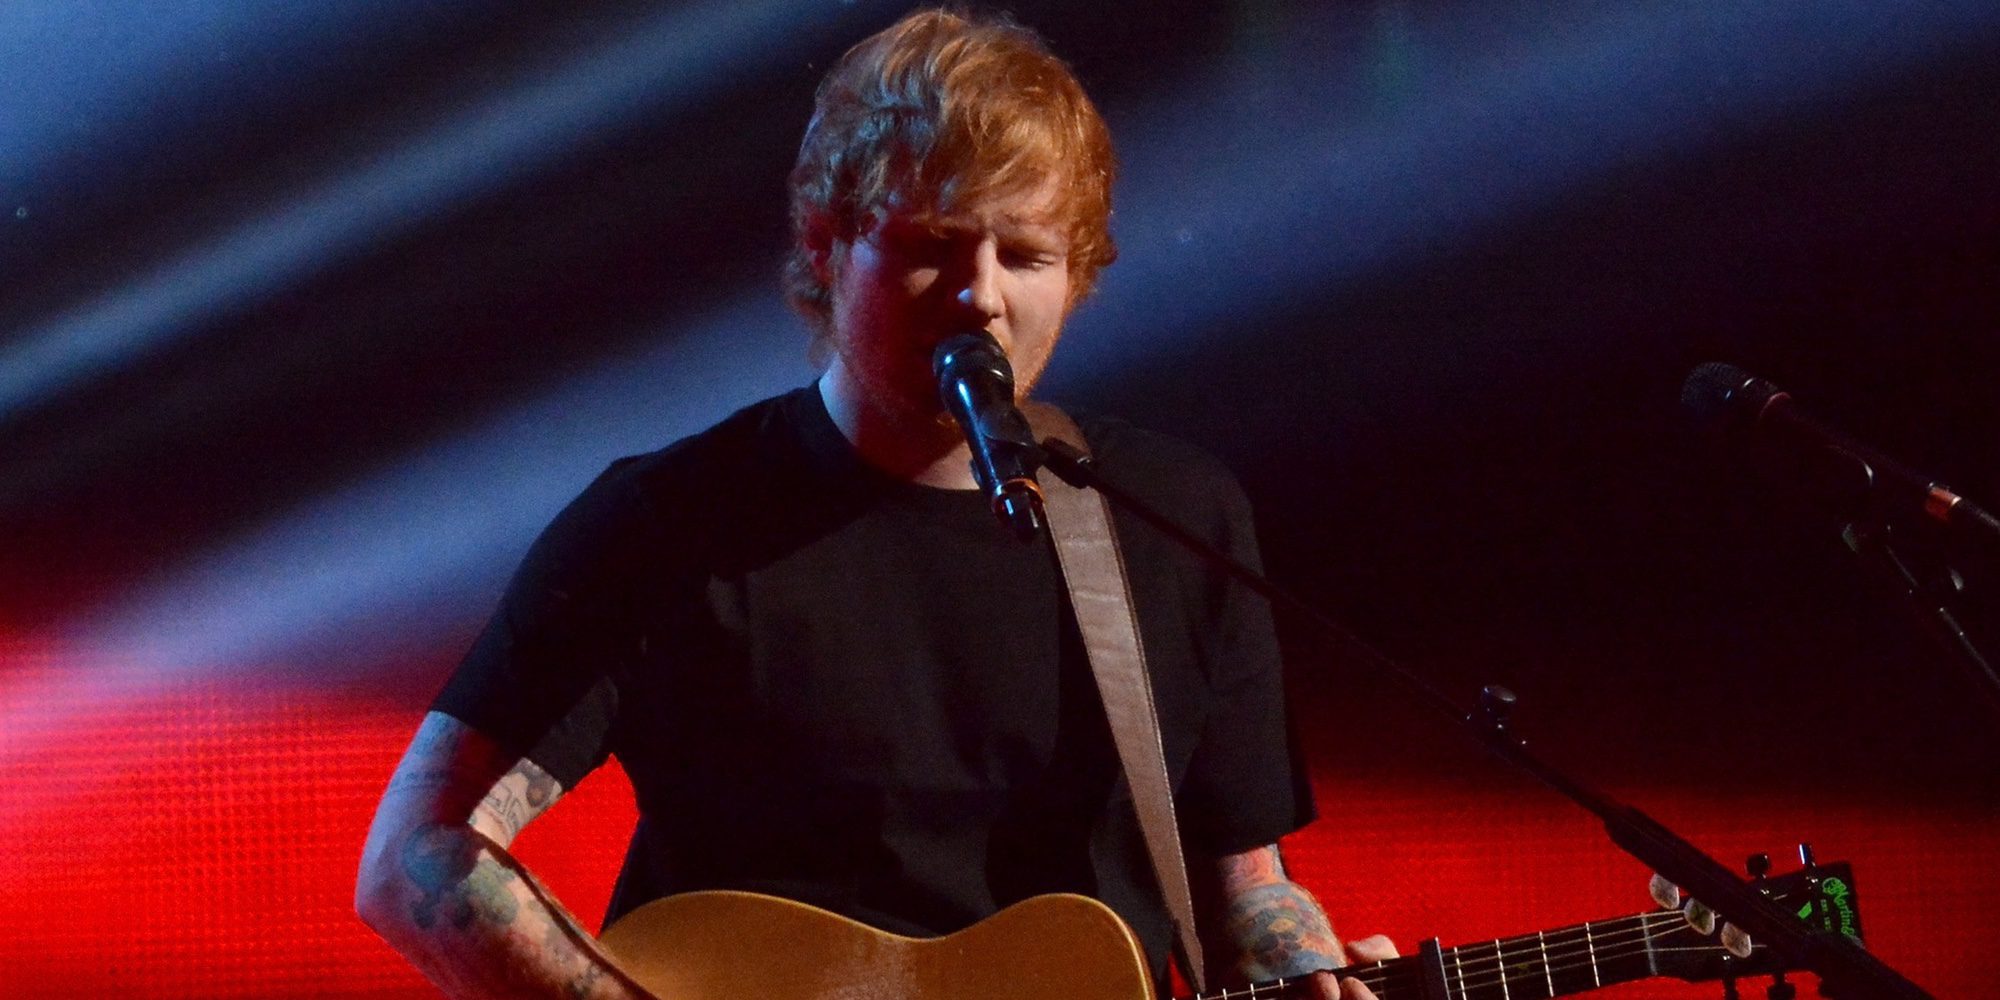 Ed Sheeran arrasa con 'Shape of you' y 'Castle on the Hill' en las listas de éxitos en tan solo 24 horas